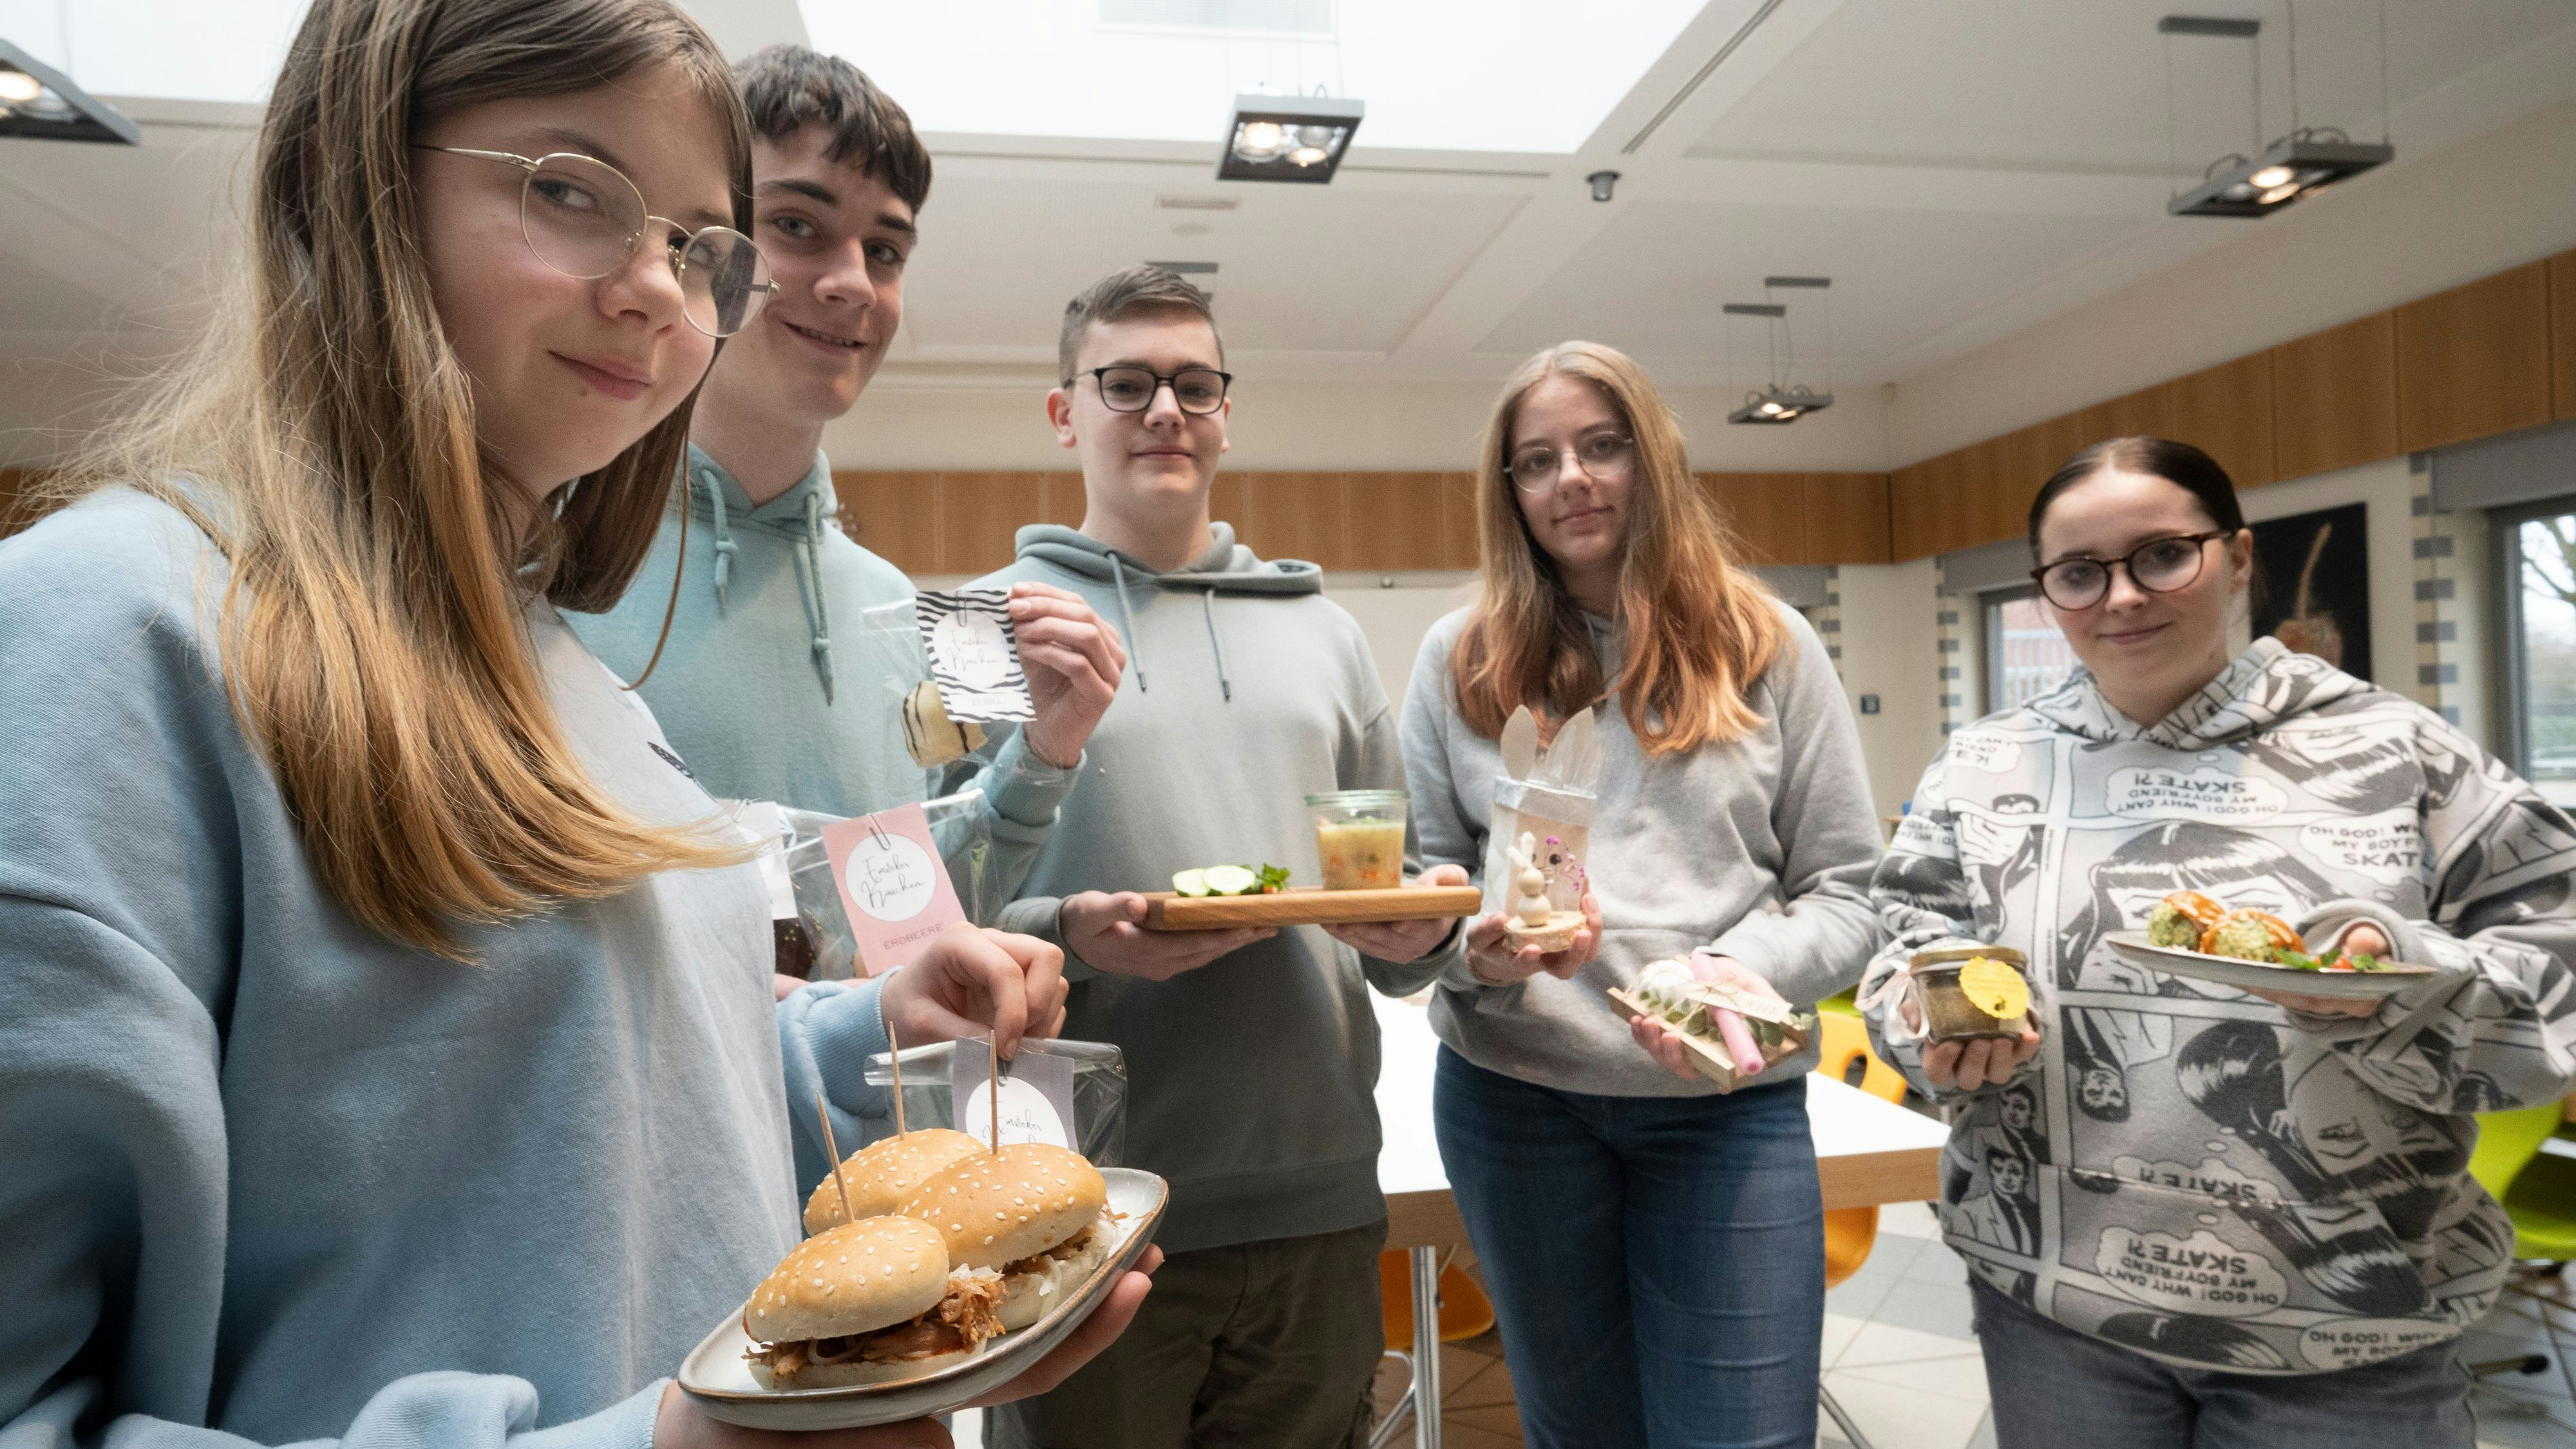 Kreativ: Eine Auswahl an Köstlichkeiten und Basteleien präsentieren die Schüler der OBS Emstek. Foto: Vorwerk